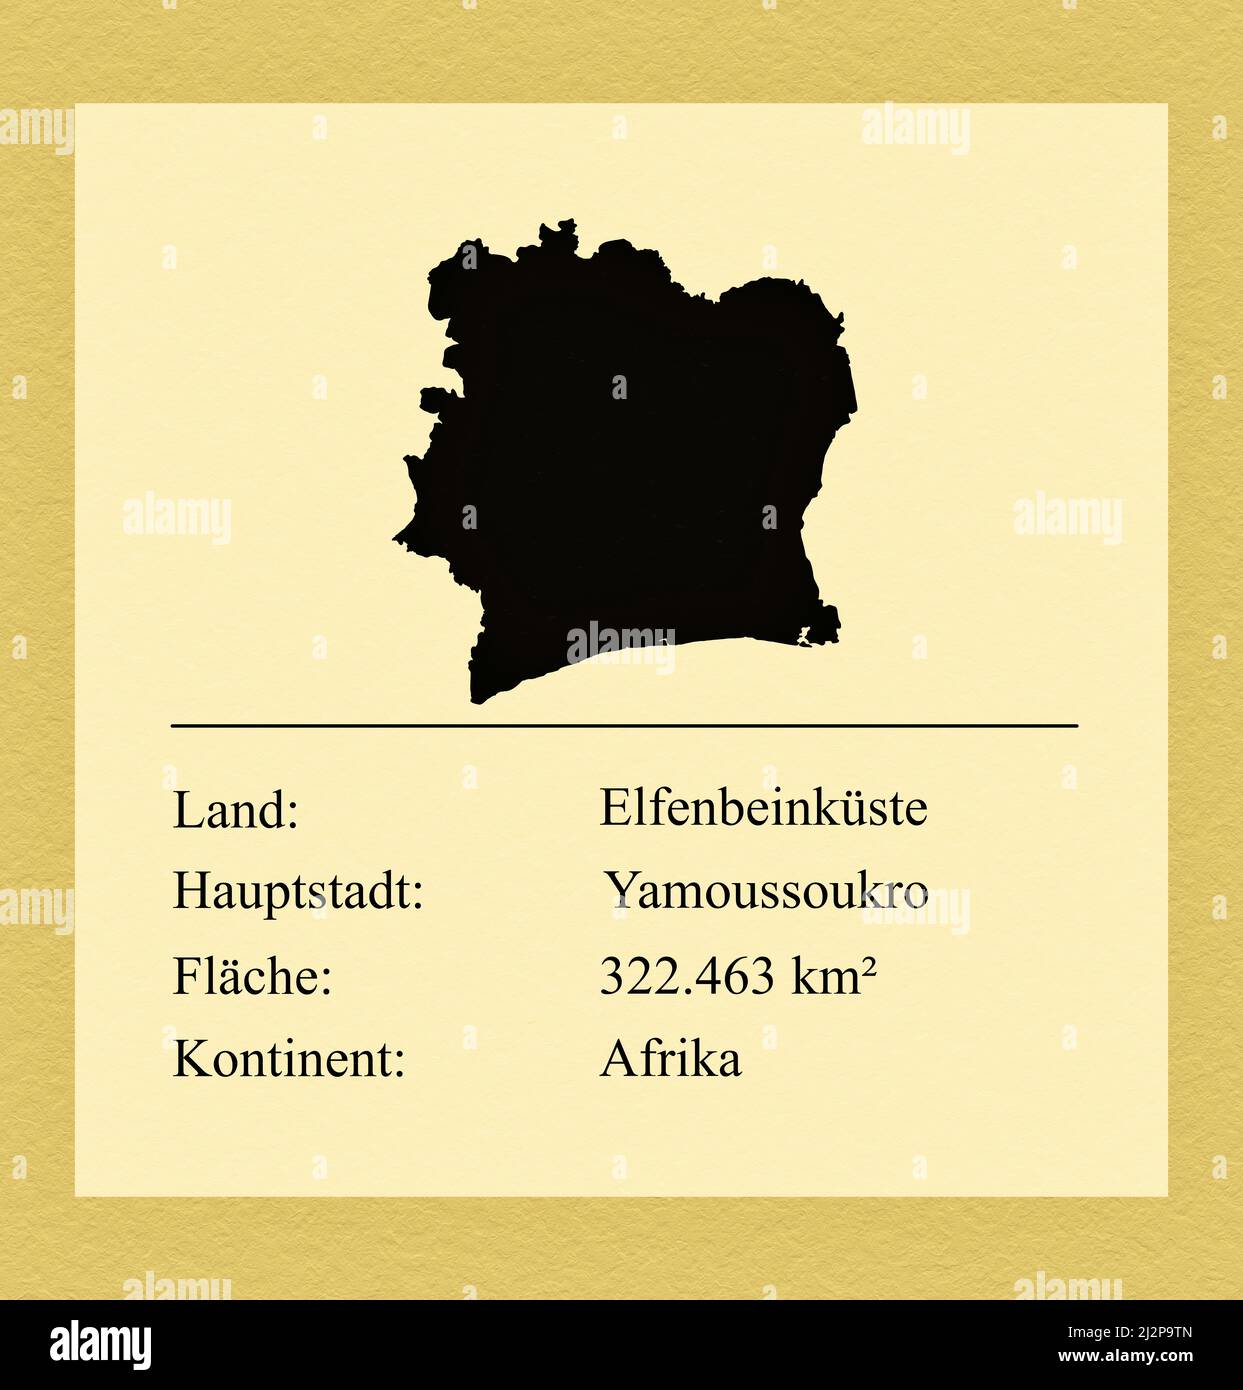 Umrisse des Landes Elfenbeinküste, darunter ein kleiner Steckbrief mit Ländernamen, Hauptstadt, Fläche und Kontinent Stock Photo